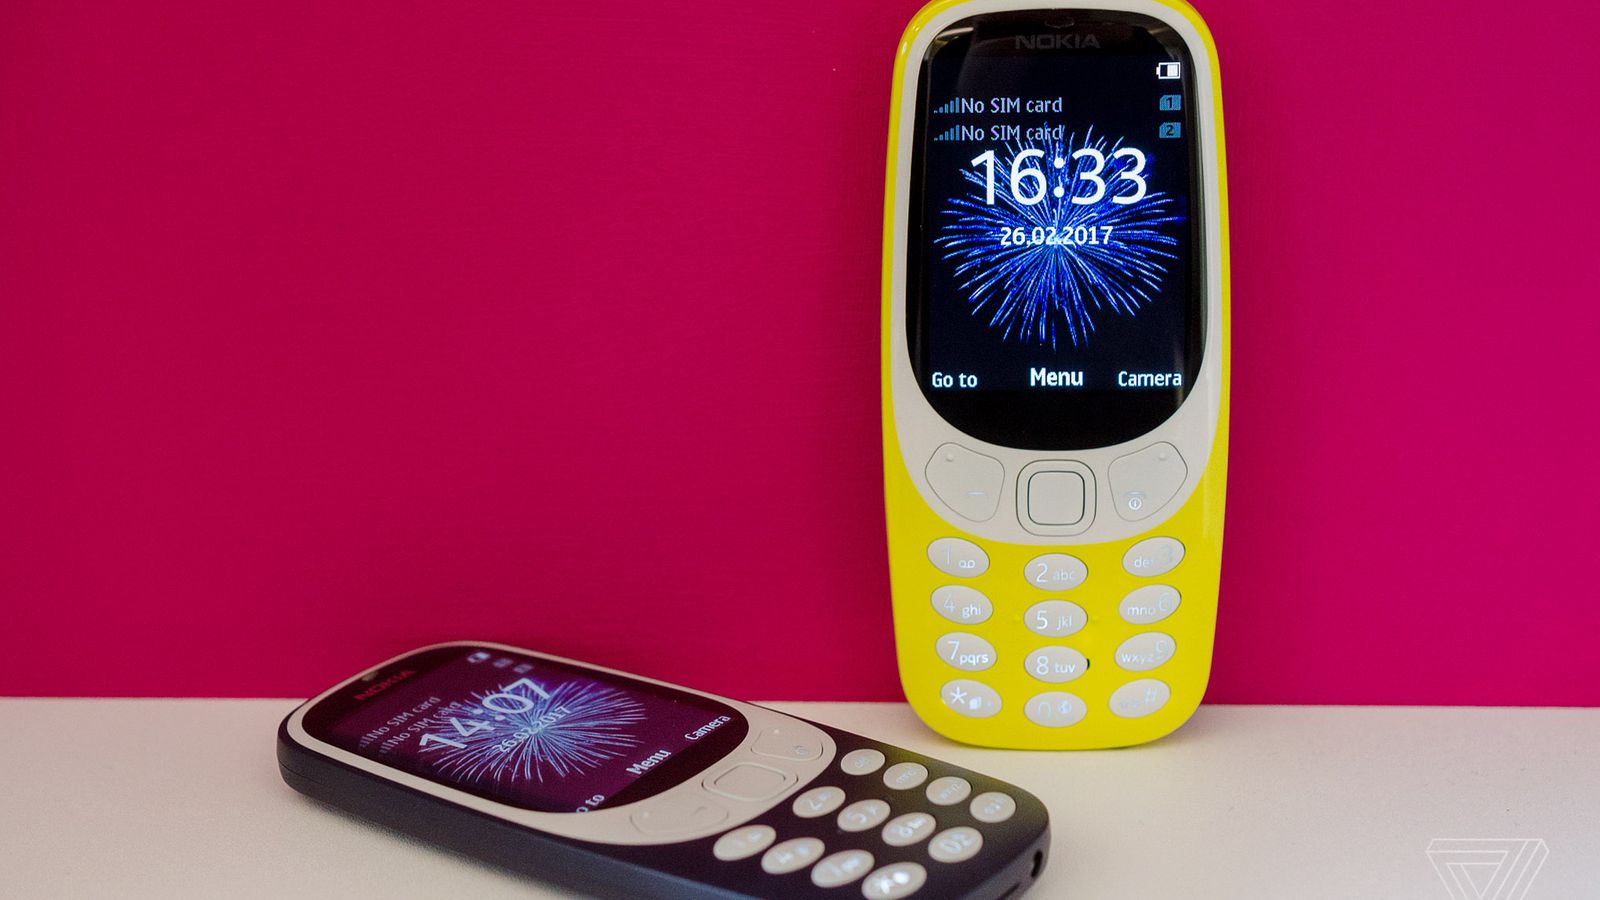 Nokia - najpopularniejsza marka MWC przez liczbę wzmianek na Twitterze